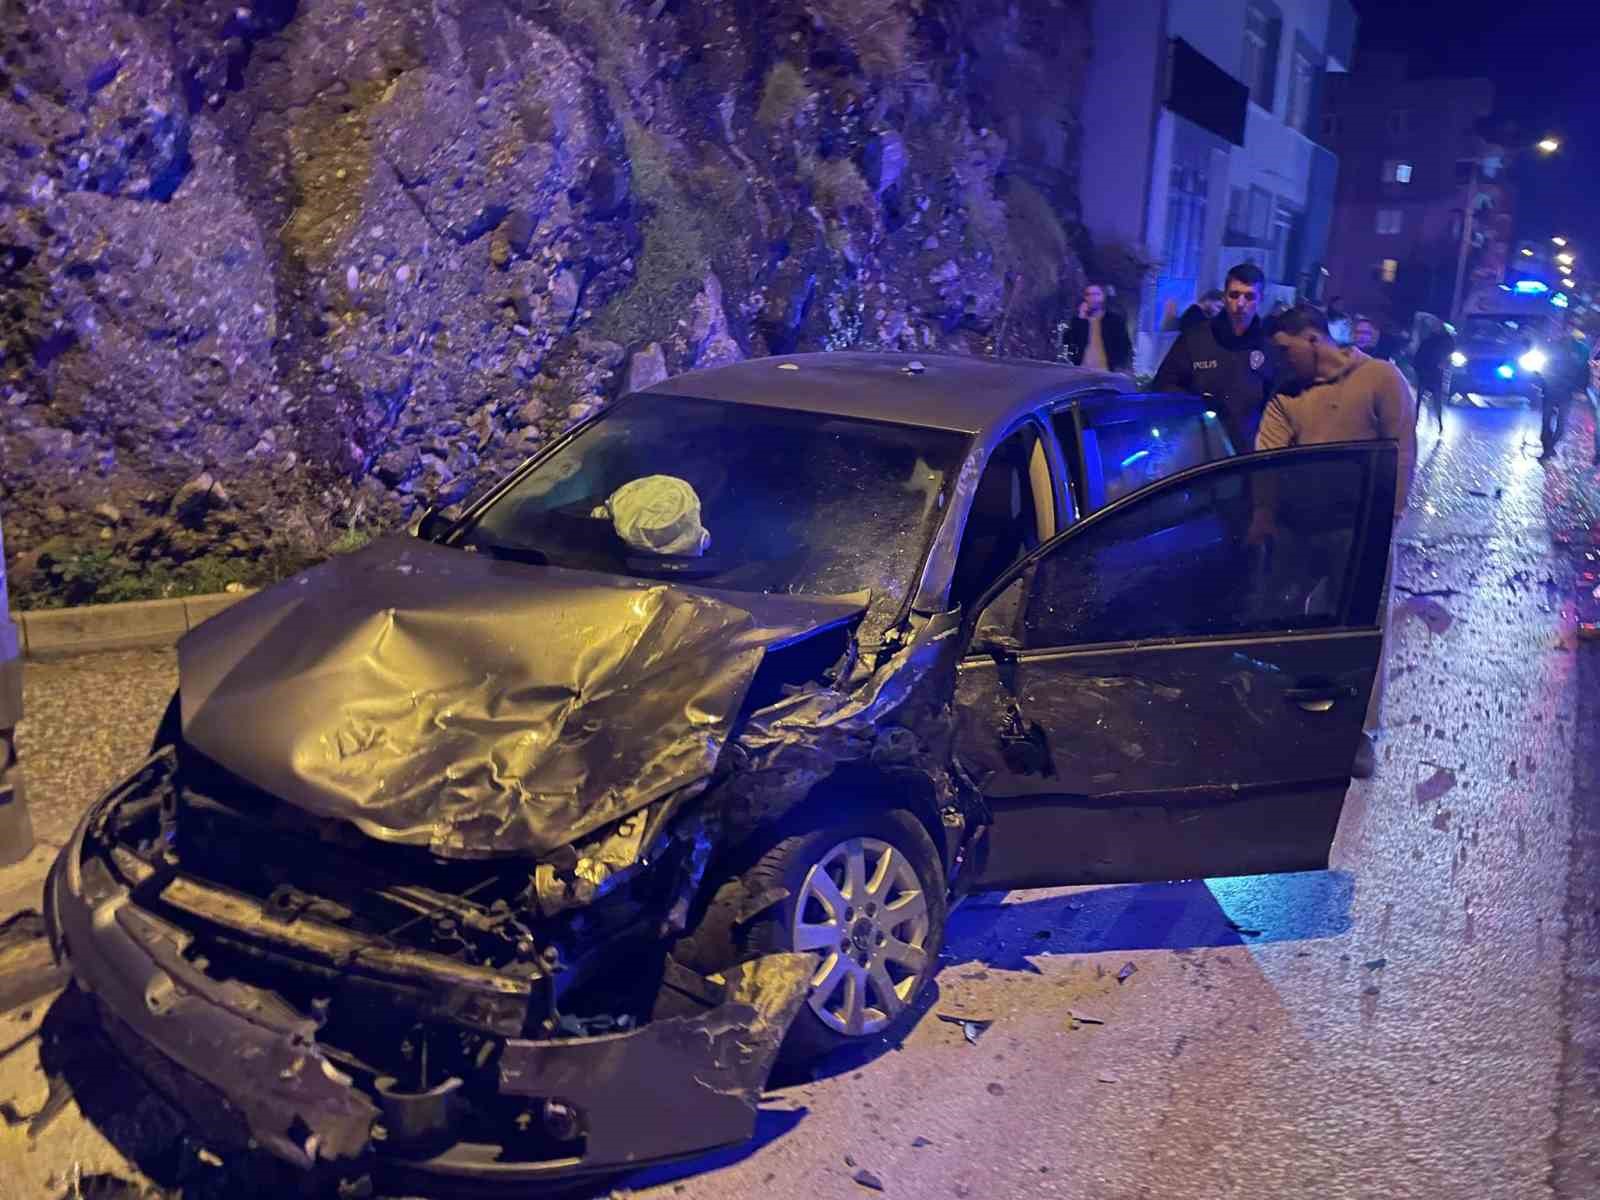 Söke’de trafik kazası: 7 yaralı